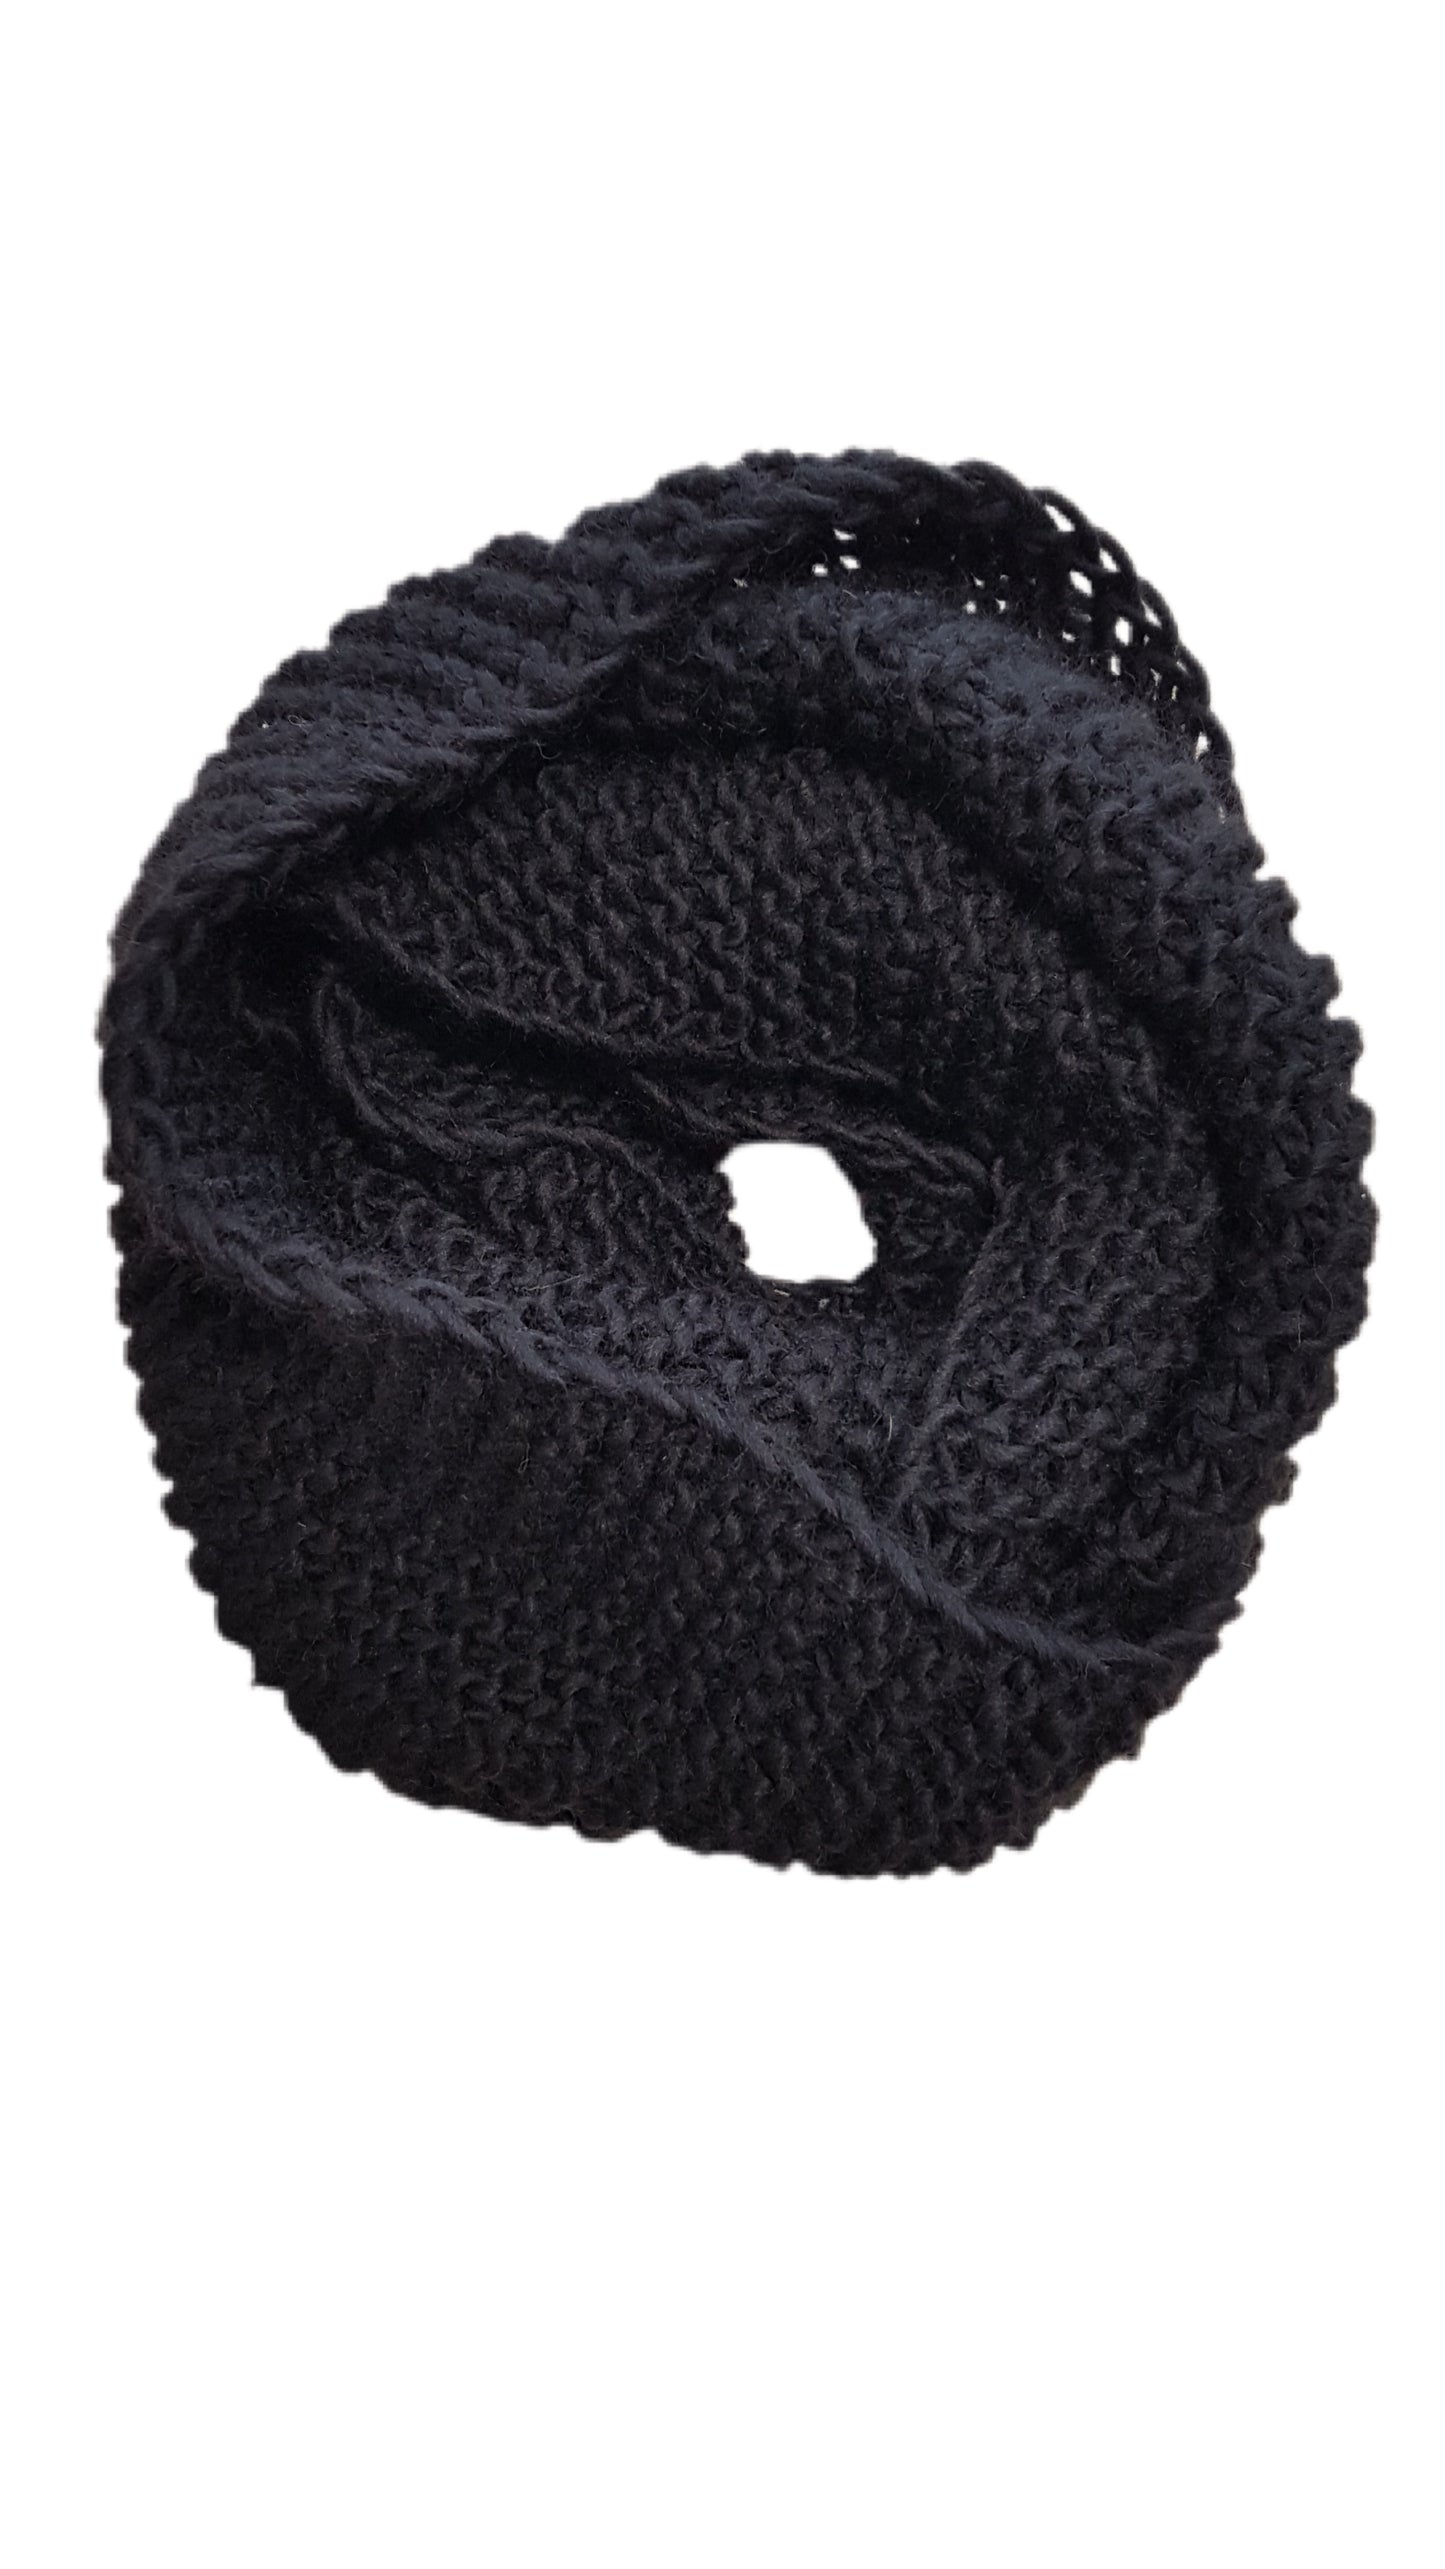 Snood DIY Knitting Kit